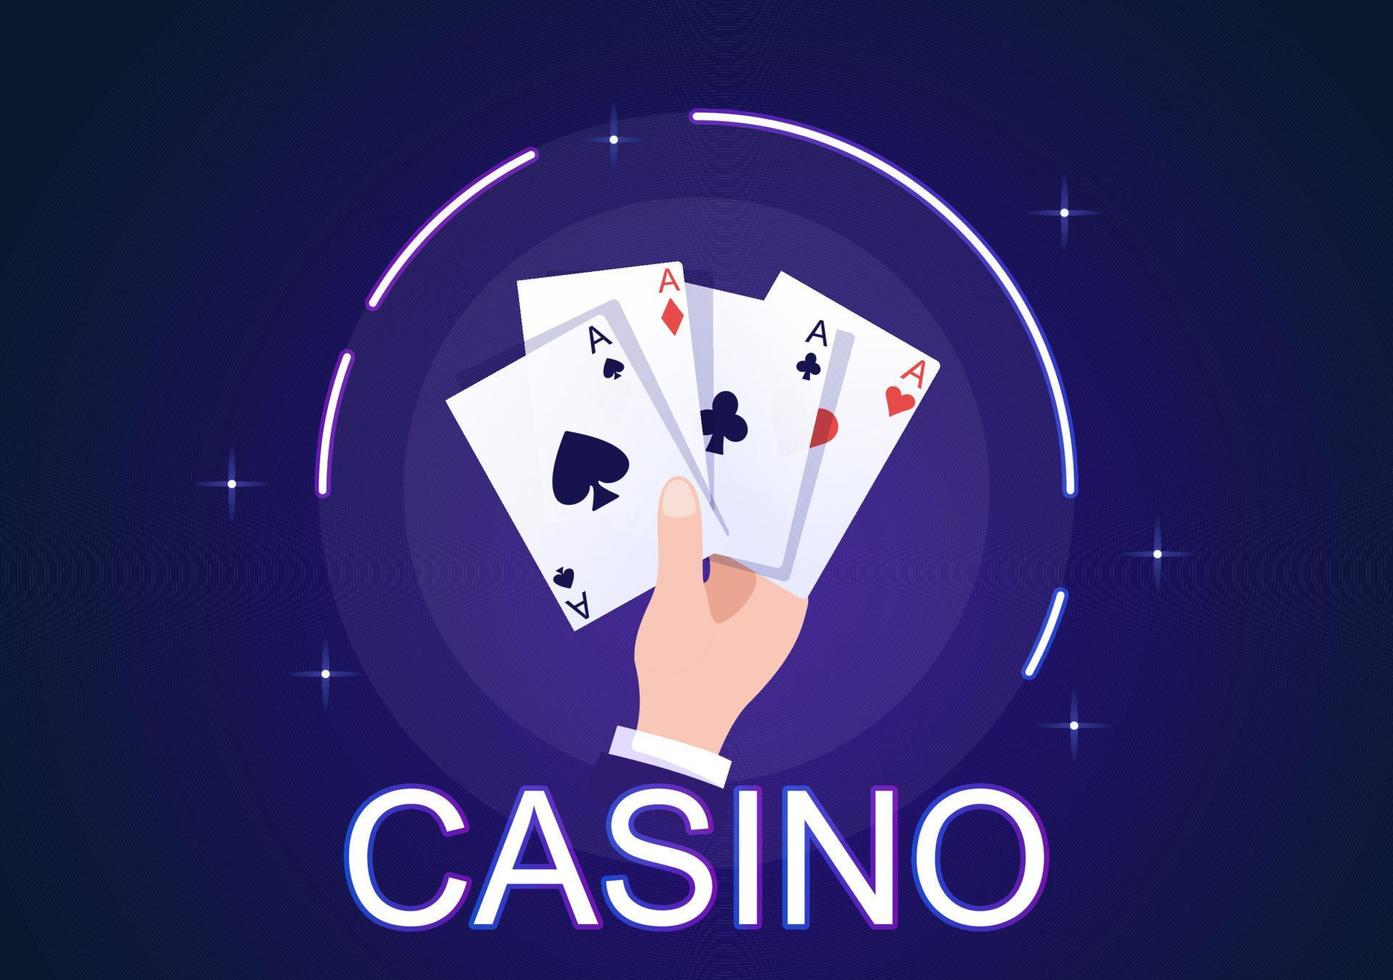 illustrazione del fumetto del casinò con pulsanti, slot machine, roulette, fiches da poker e carte da gioco per un design in stile gioco d'azzardo vettore